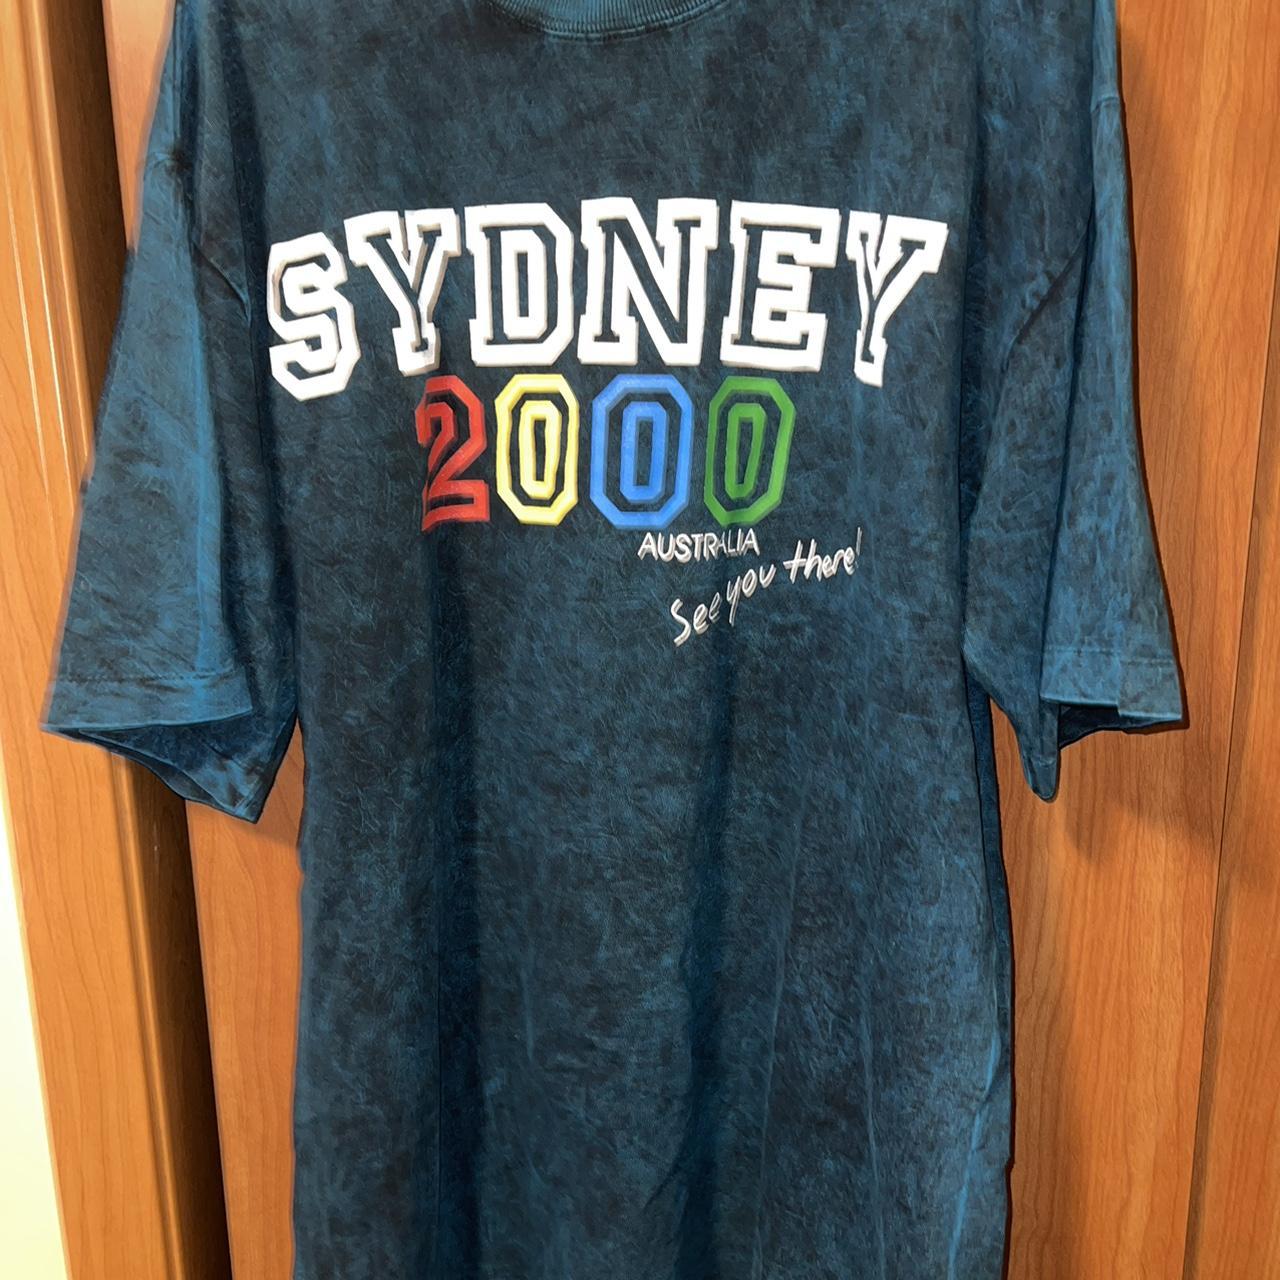 Vintage 2000 Sydney Australia shirt. Xl-xxl. Super... - Depop